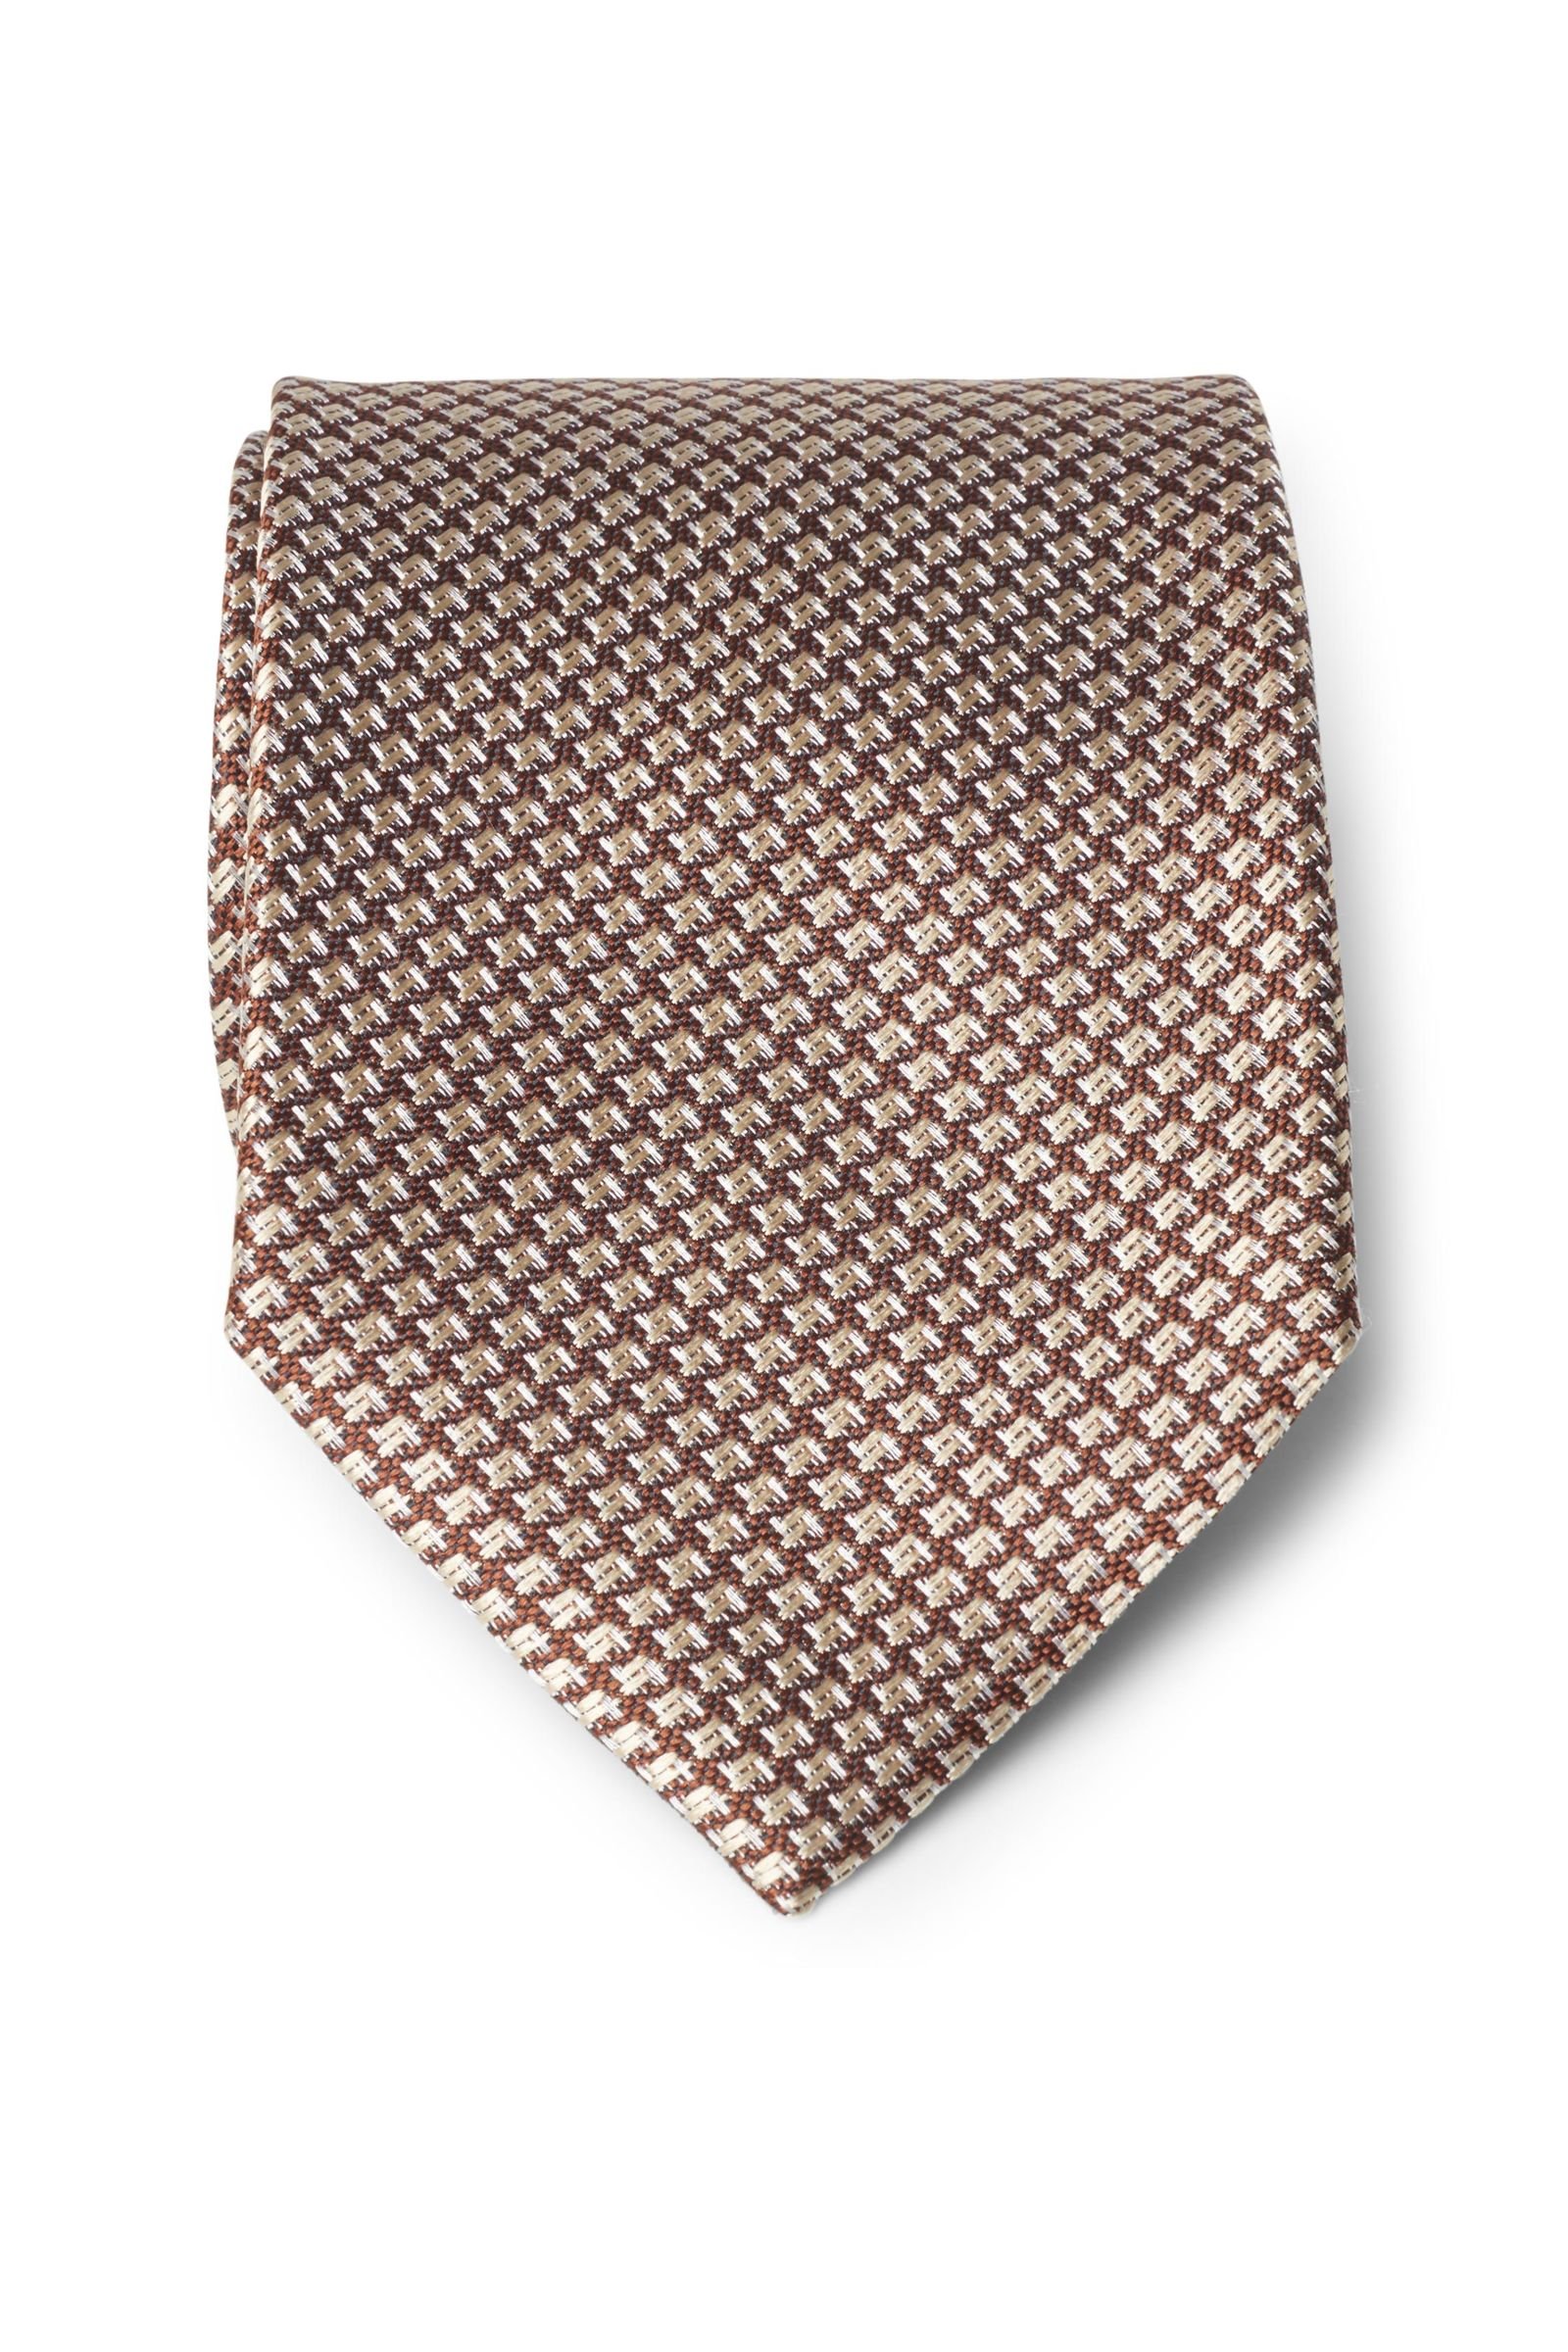 Silk tie brown patterned